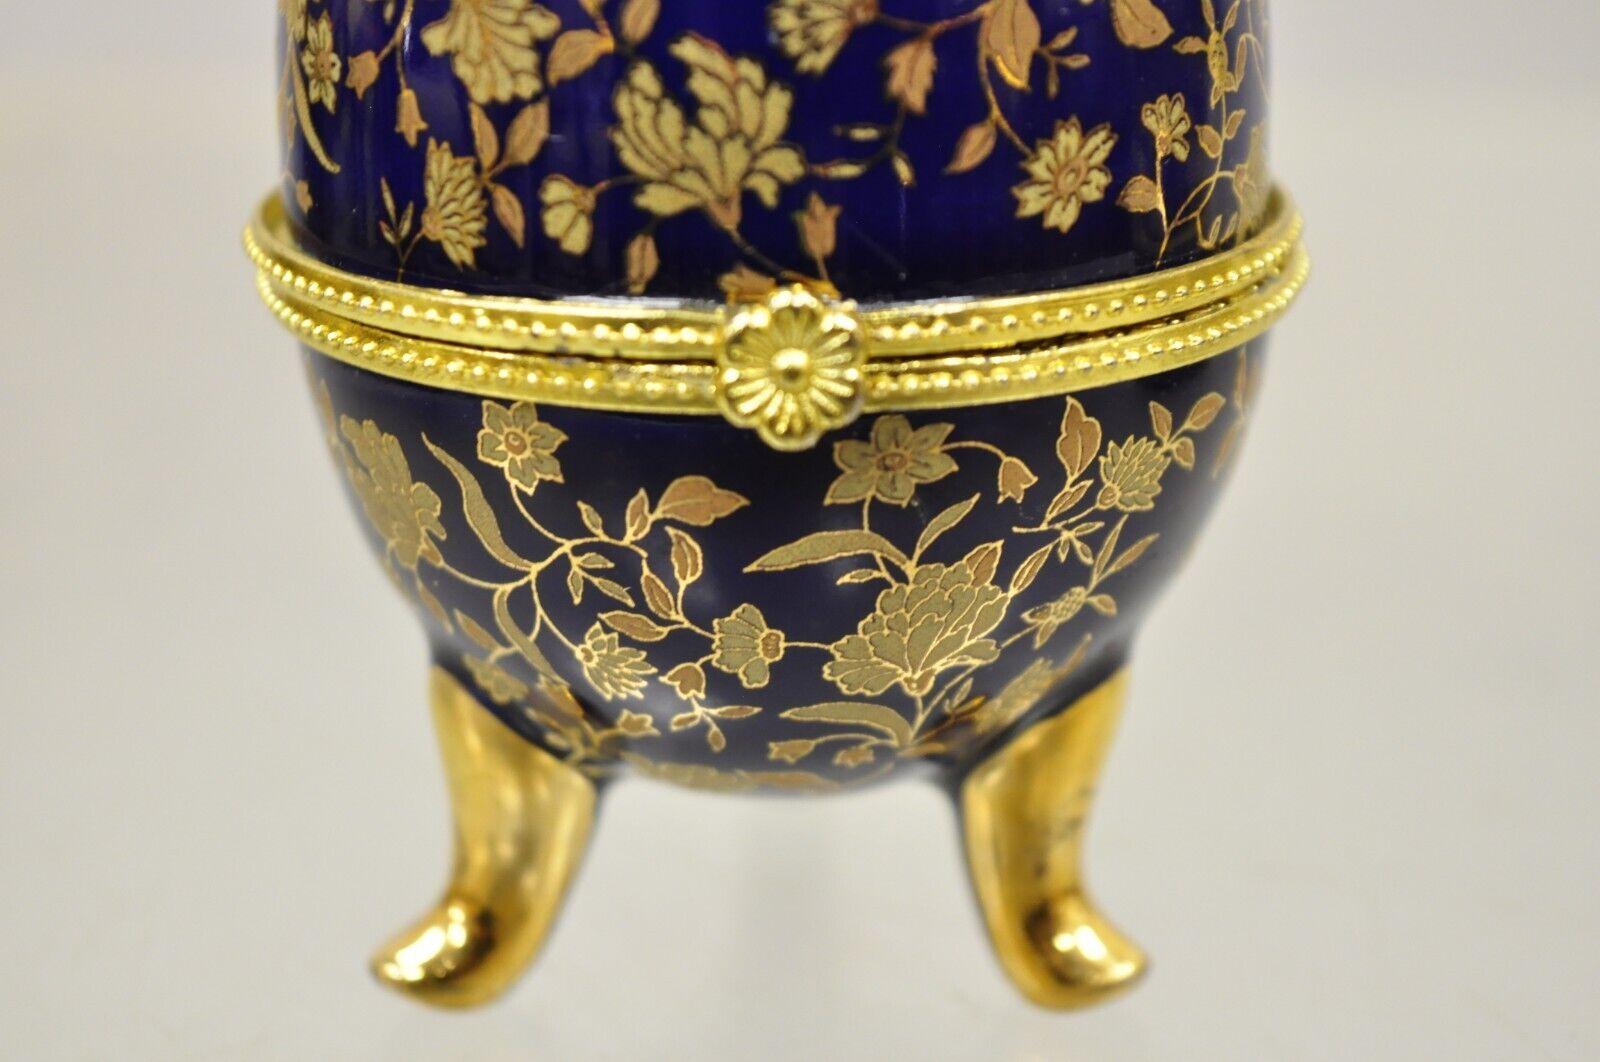 French Provincial Cobalt Blue Porcelain Egg Gold Gilt Hinged Lid Candle Trinket Box, 2 Pcs For Sale